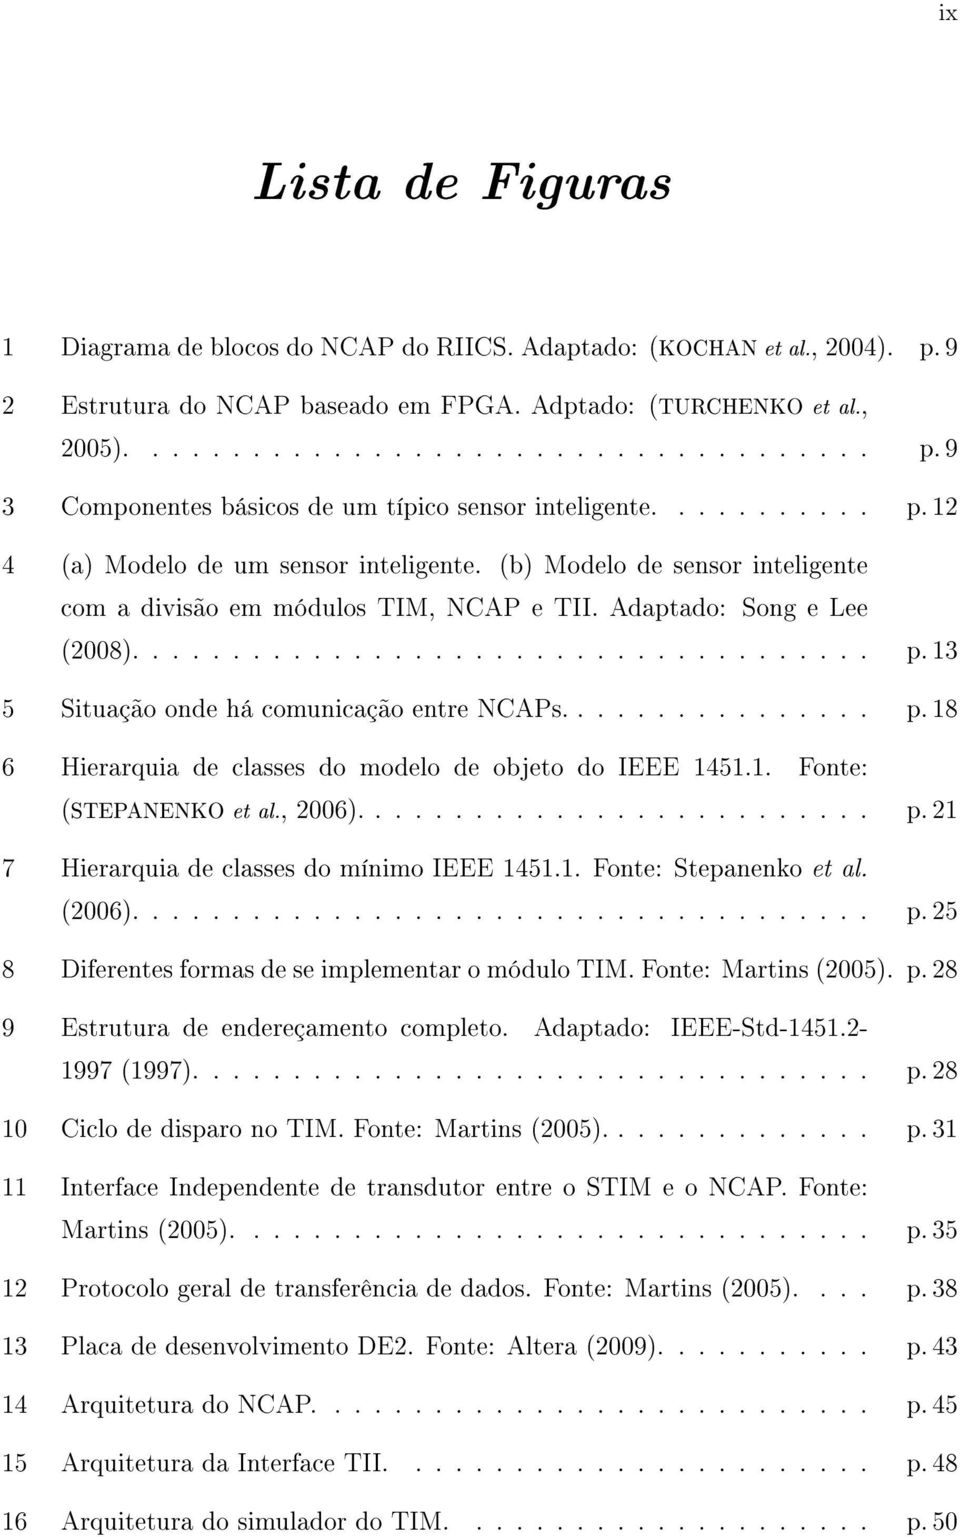 ............... p. 18 6 Hierarquia de classes do modelo de objeto do IEEE 1451.1. Fonte: (STEPANENKO et al., 2006).......................... p. 21 7 Hierarquia de classes do mínimo IEEE 1451.1. Fonte: Stepanenko et al.